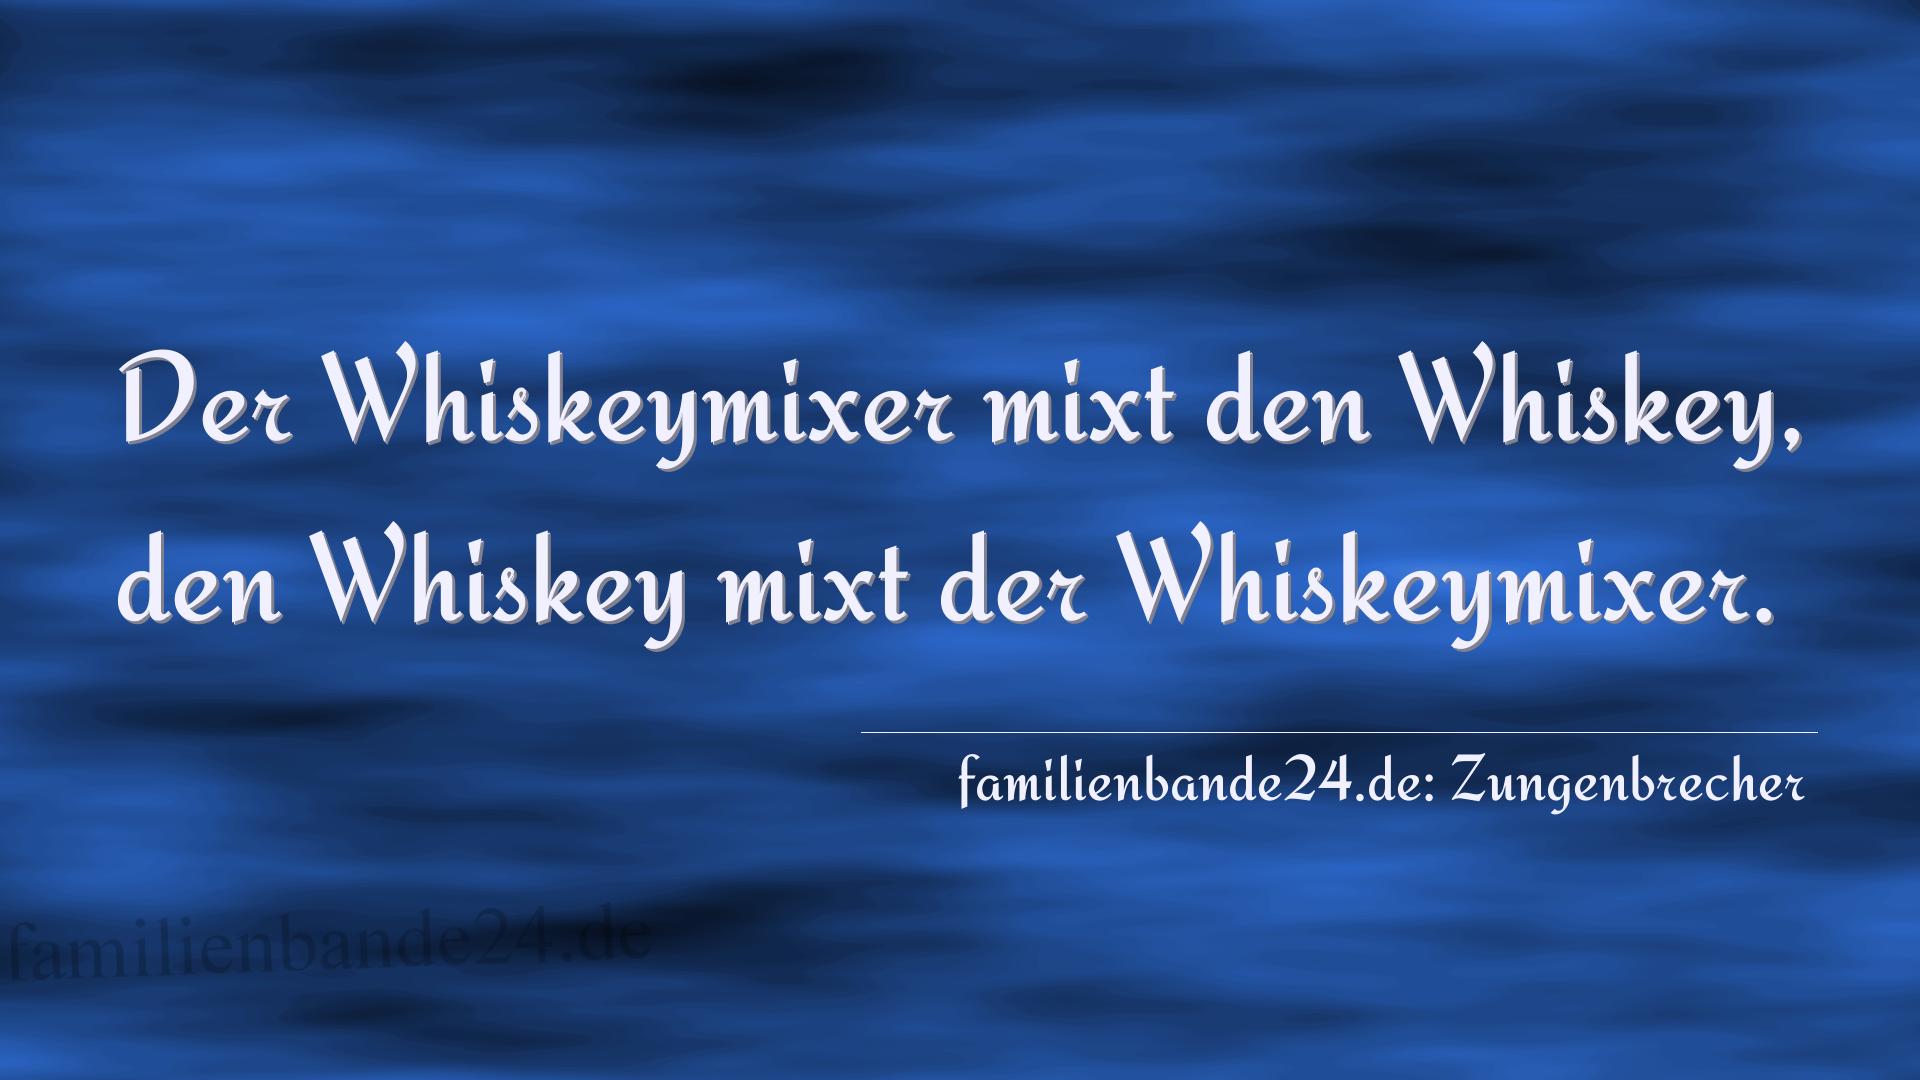 Zungenbrecher Nr. 2006: Der Whiskeymixer mixt den Whiskey,
den Whiskey mixt der W [...]